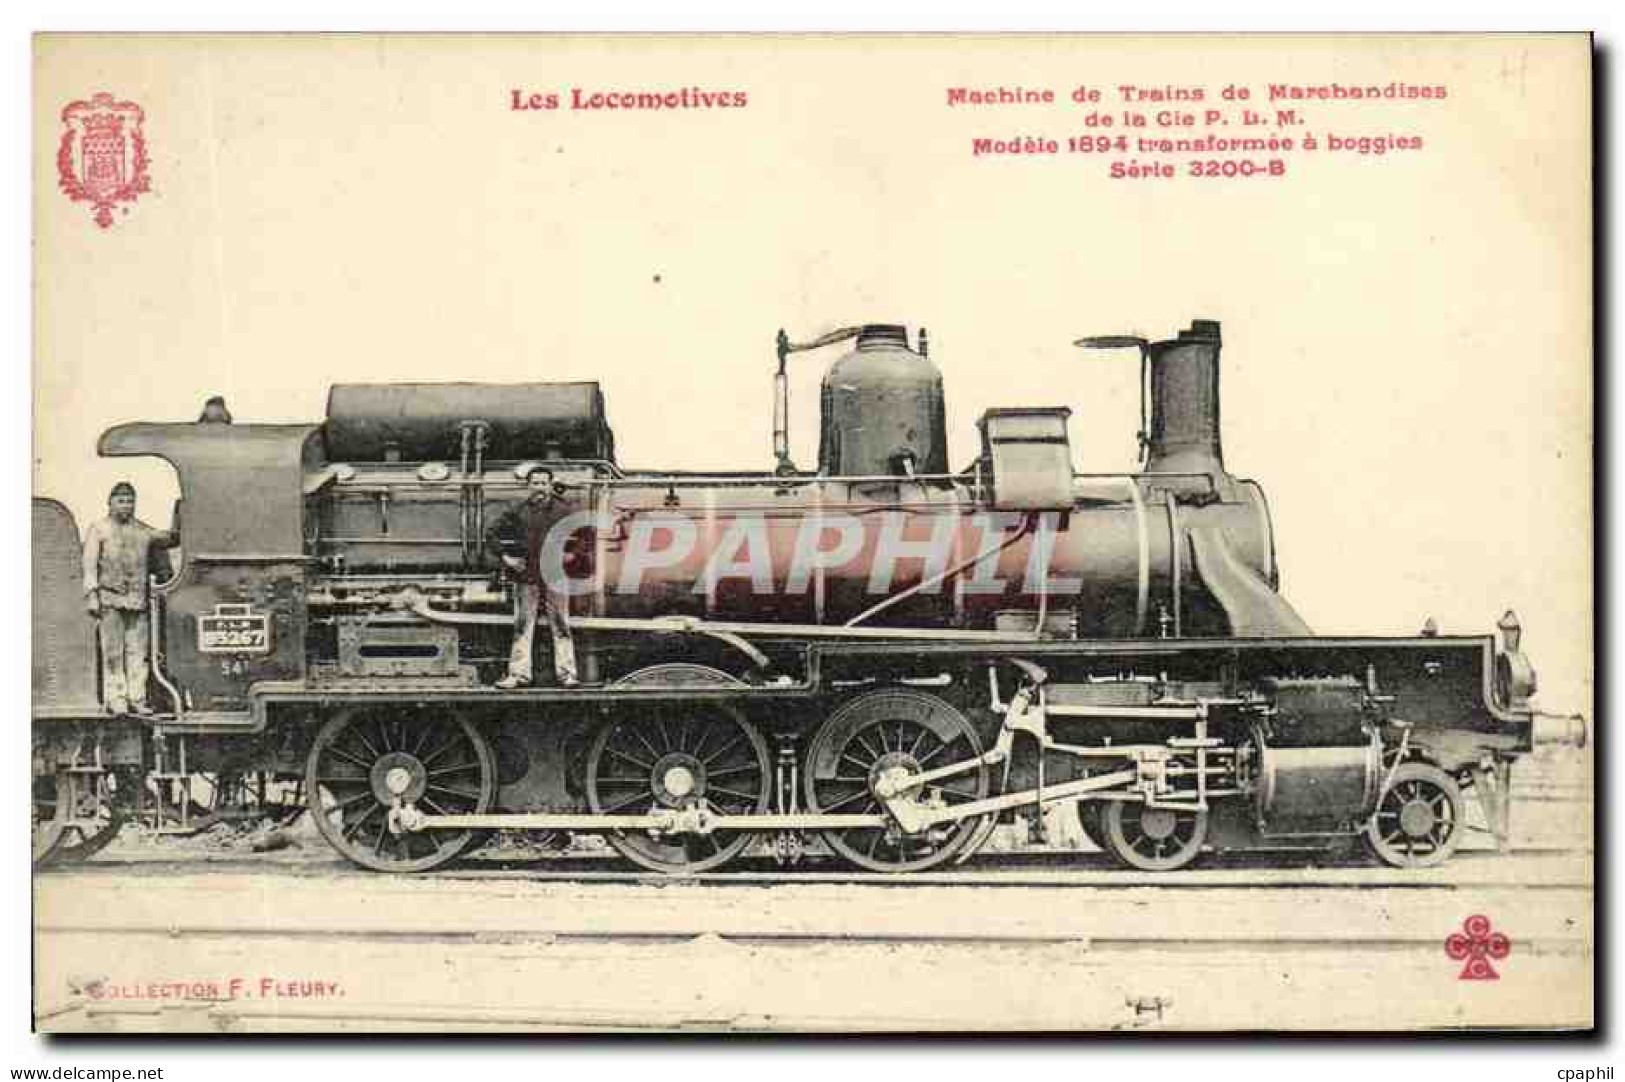 CPA Train Locomotive Modele 1894 A Boggies - Matériel